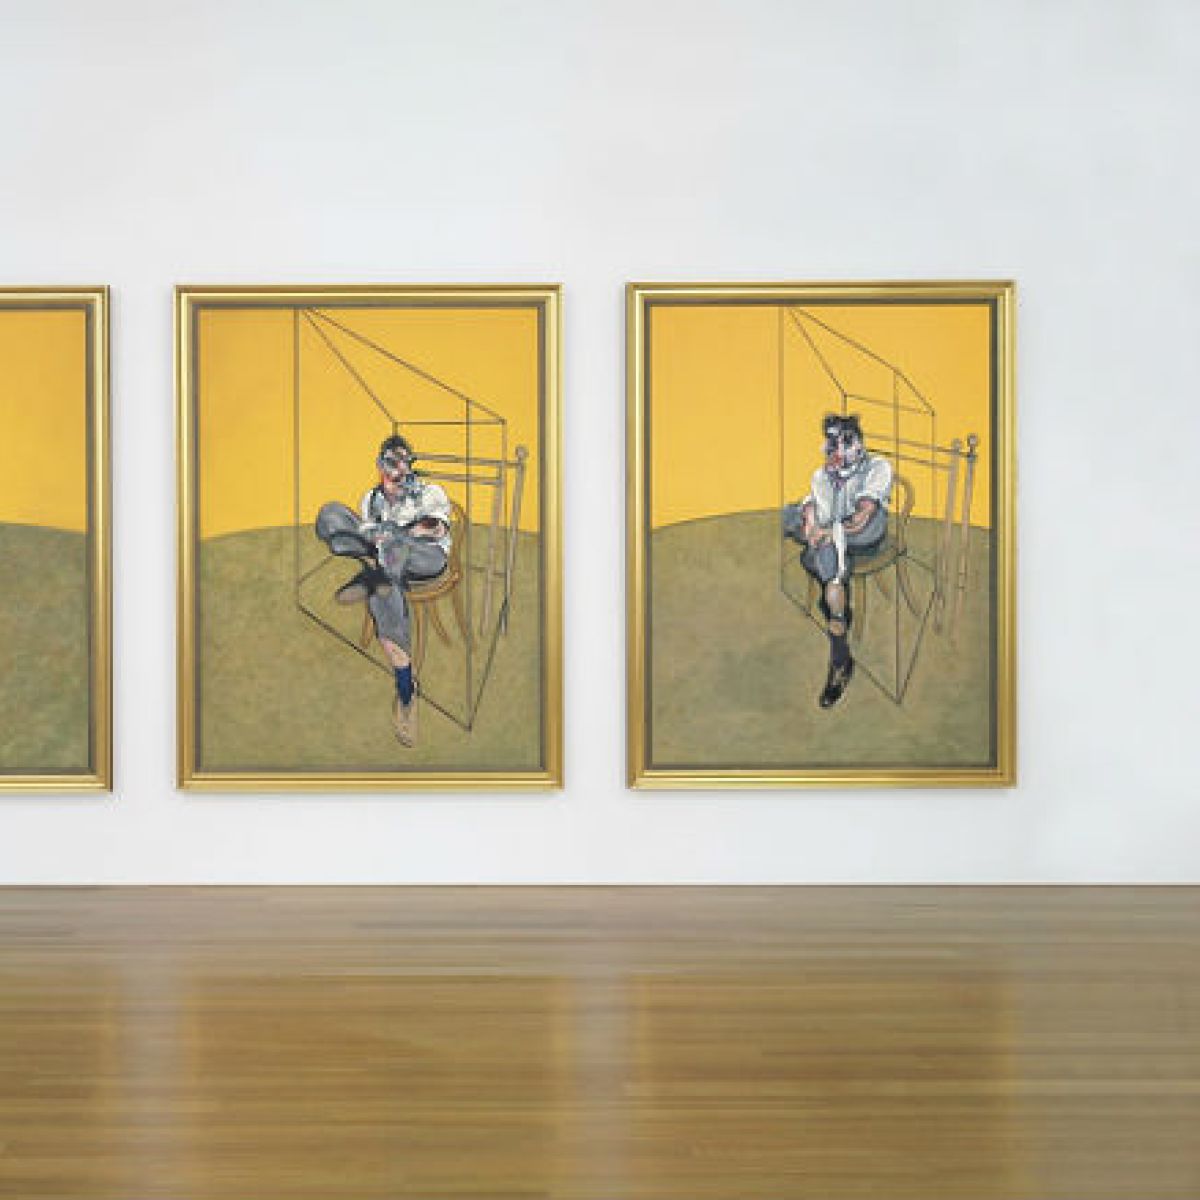 Obraz Francisa Bacona osiągnął rekordową cenę na aukcji!